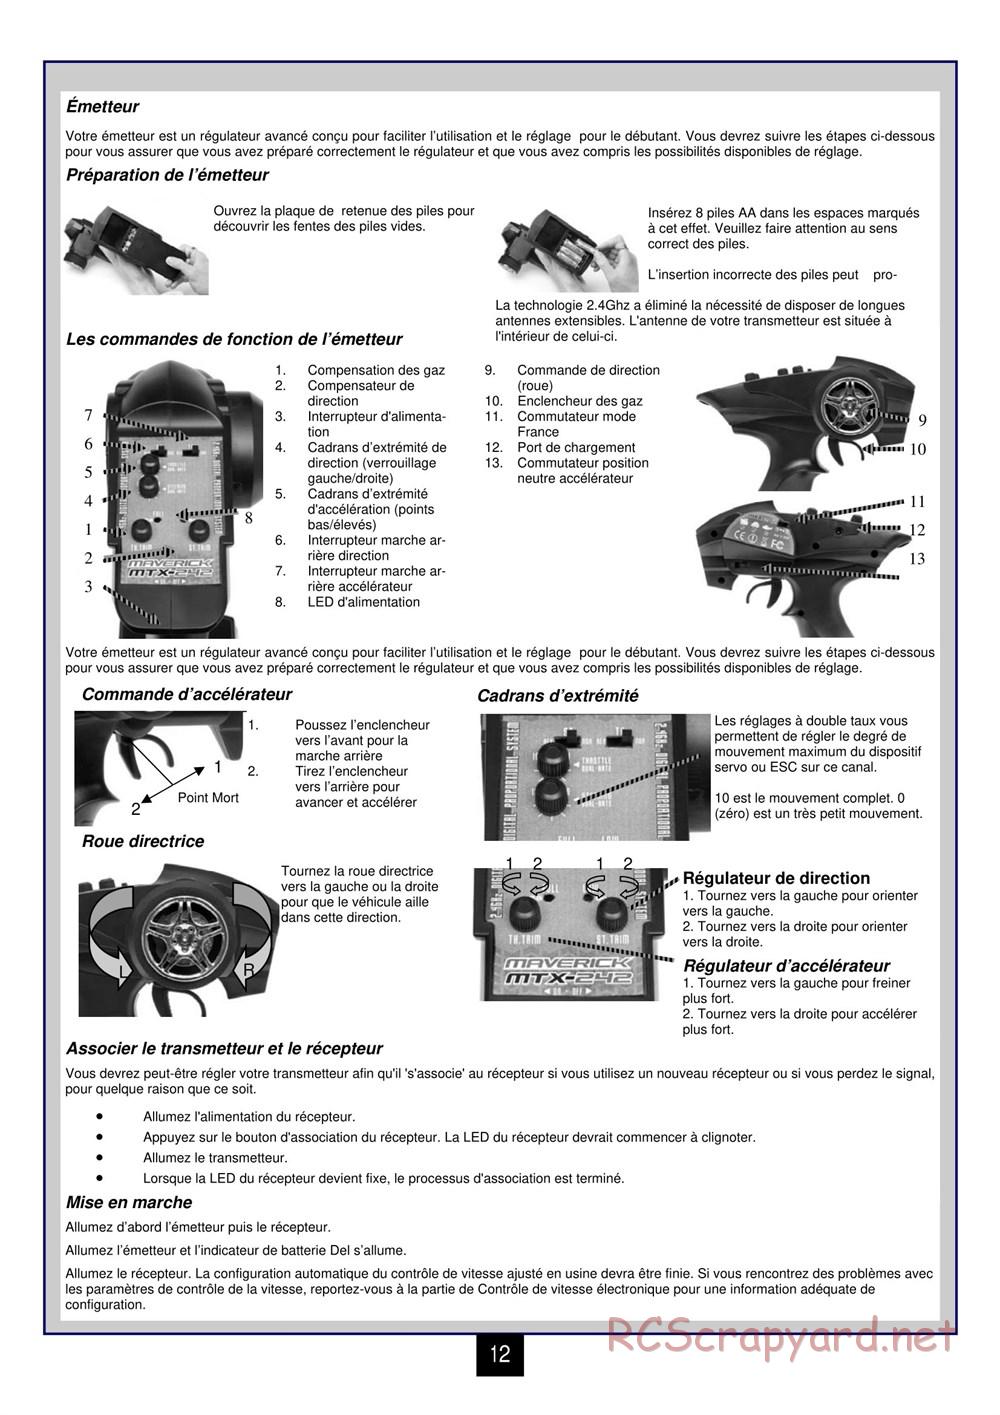 HPI - Maverick Blackout XB - Manual - Page 13